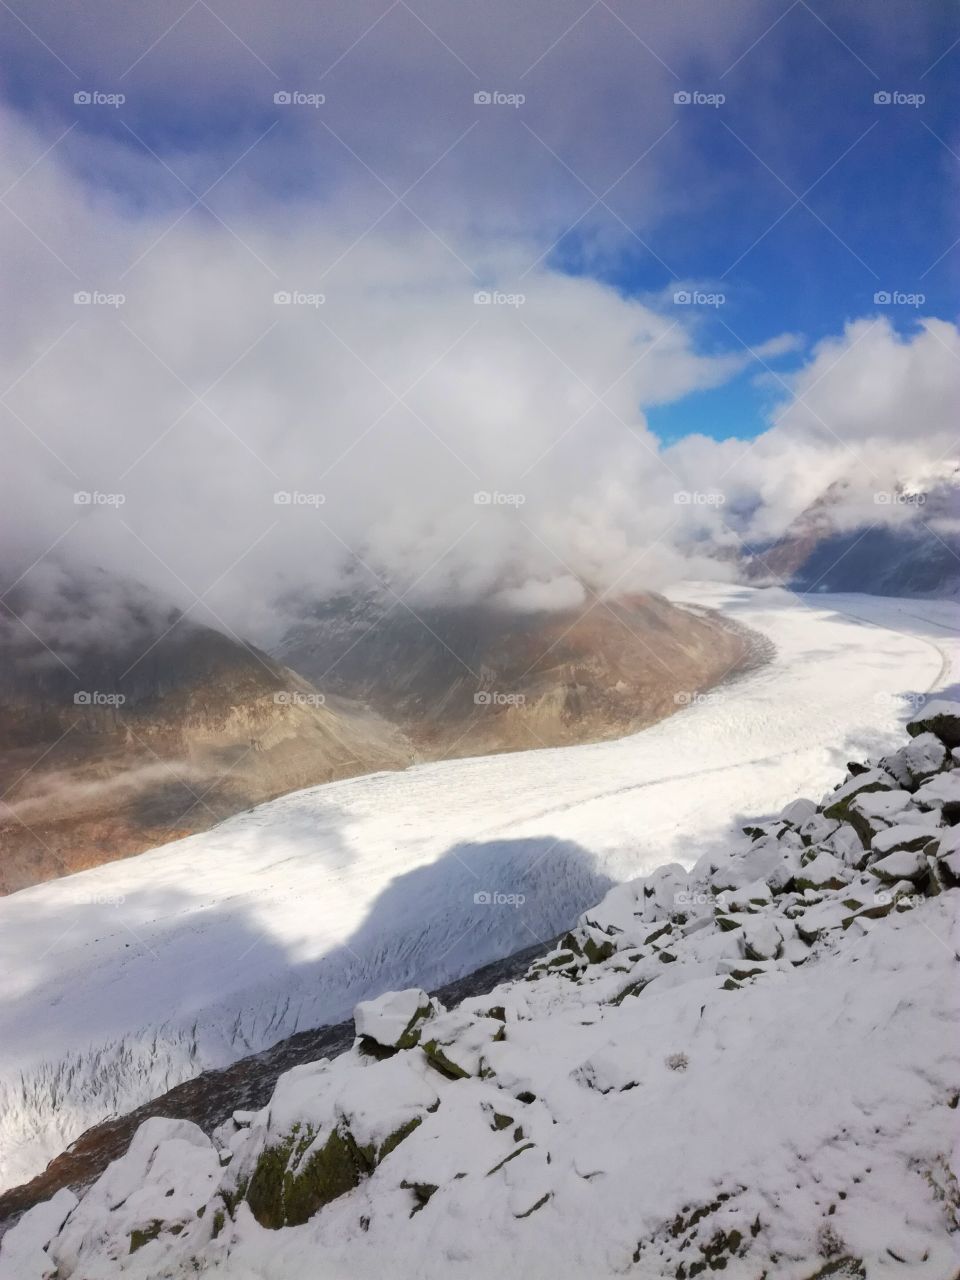 A glacier "glaciär" in the alps